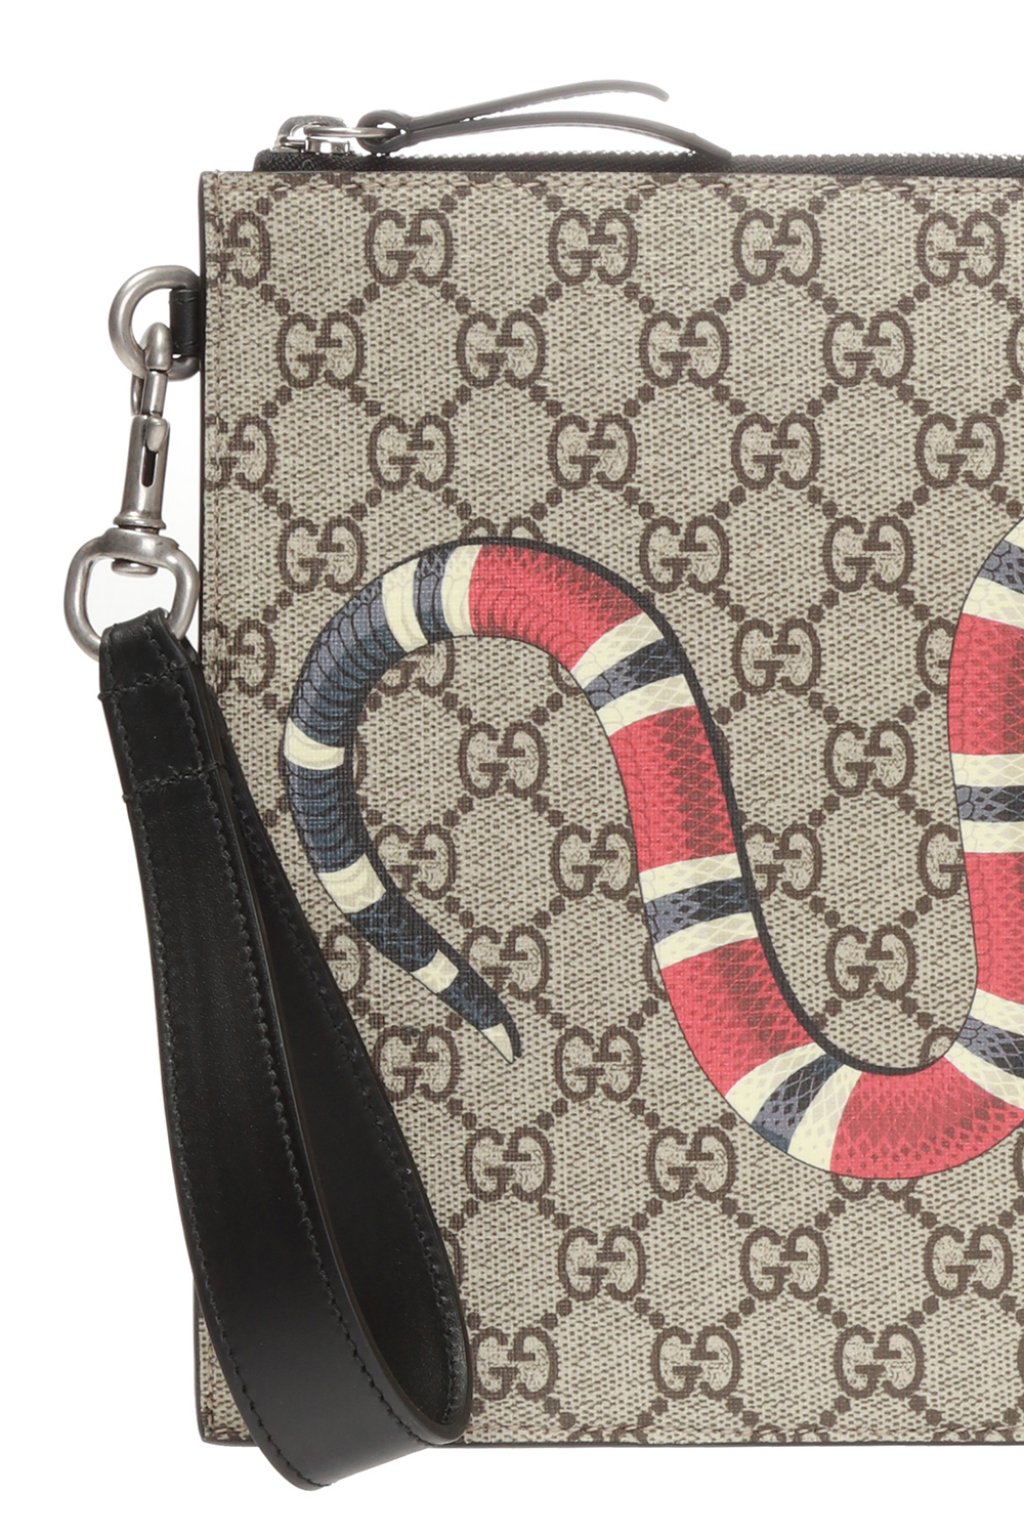 Snake motif clutch Gucci - Vitkac Australia